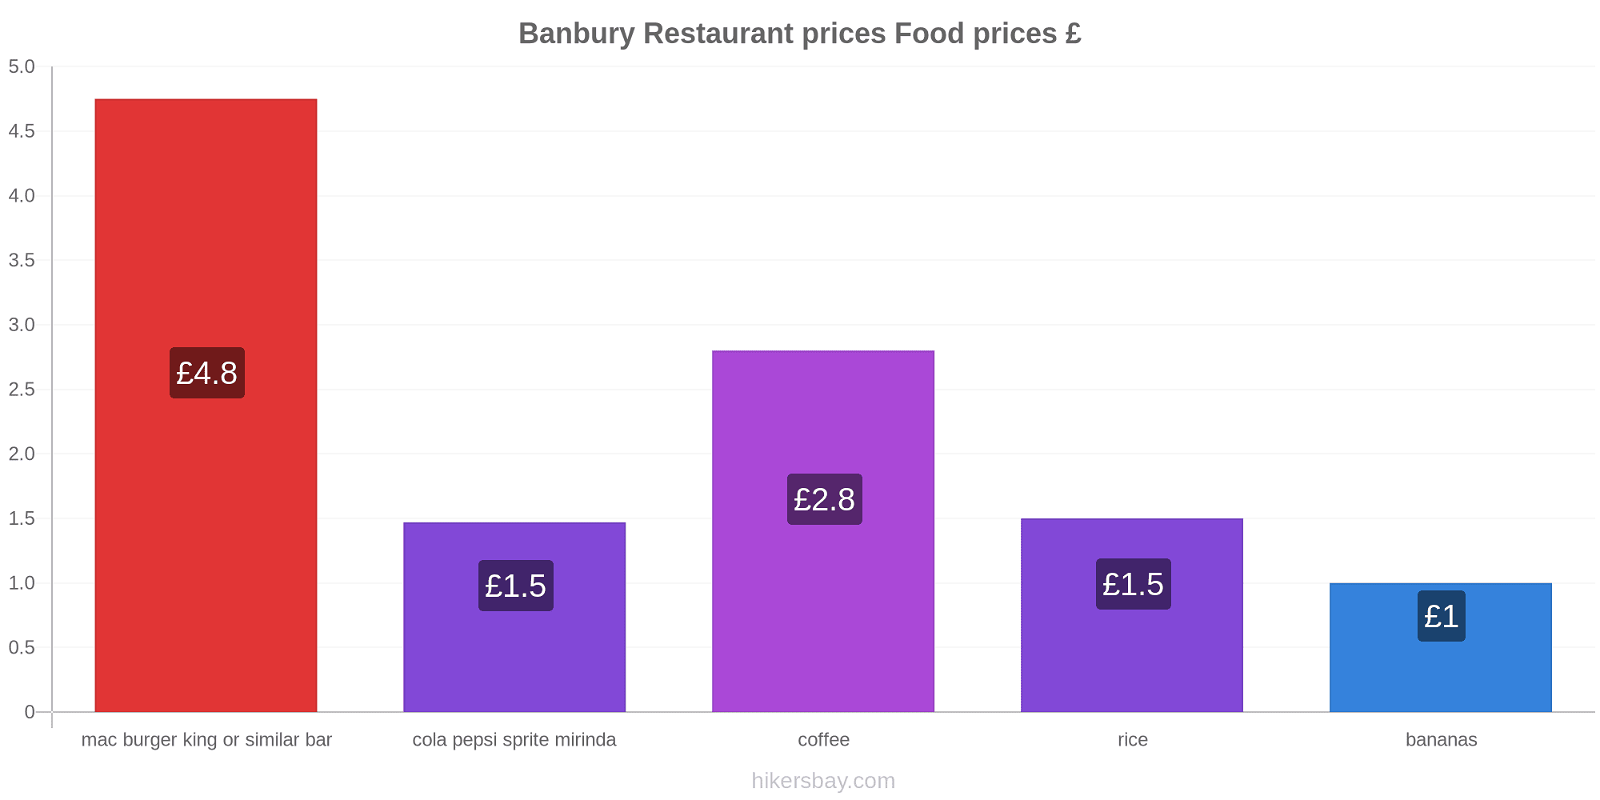 Banbury price changes hikersbay.com